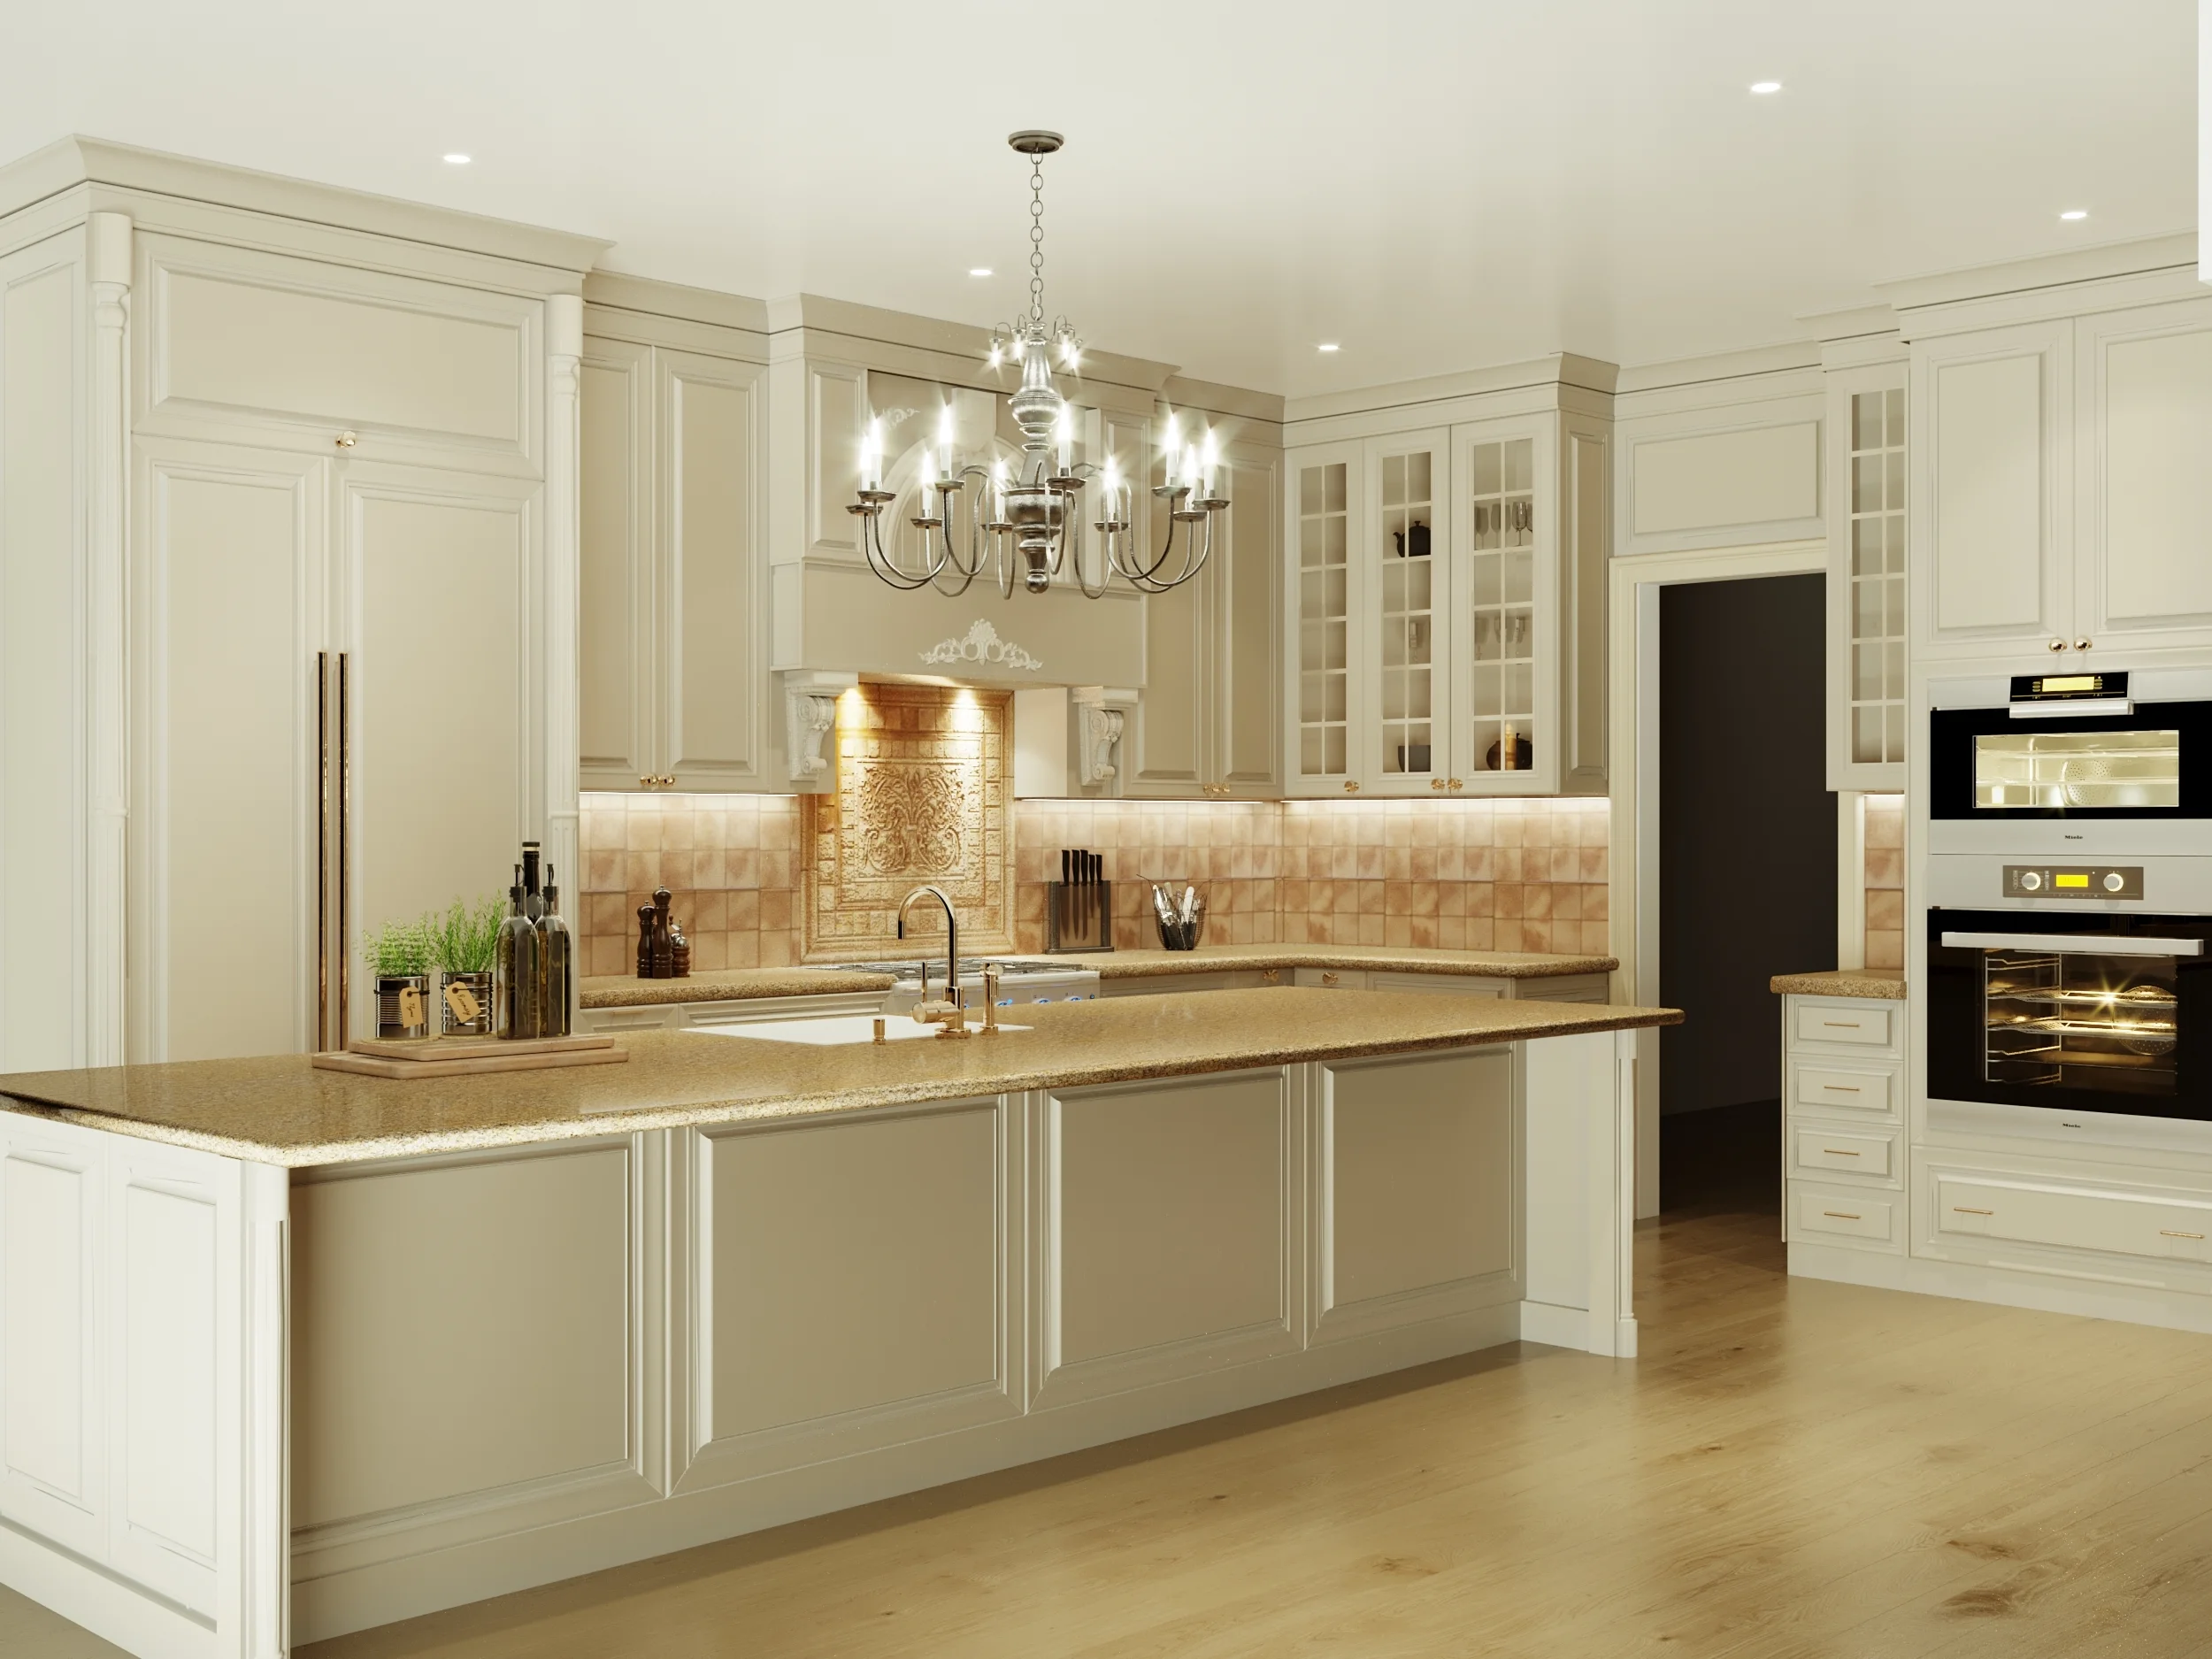 home kitchen interior design